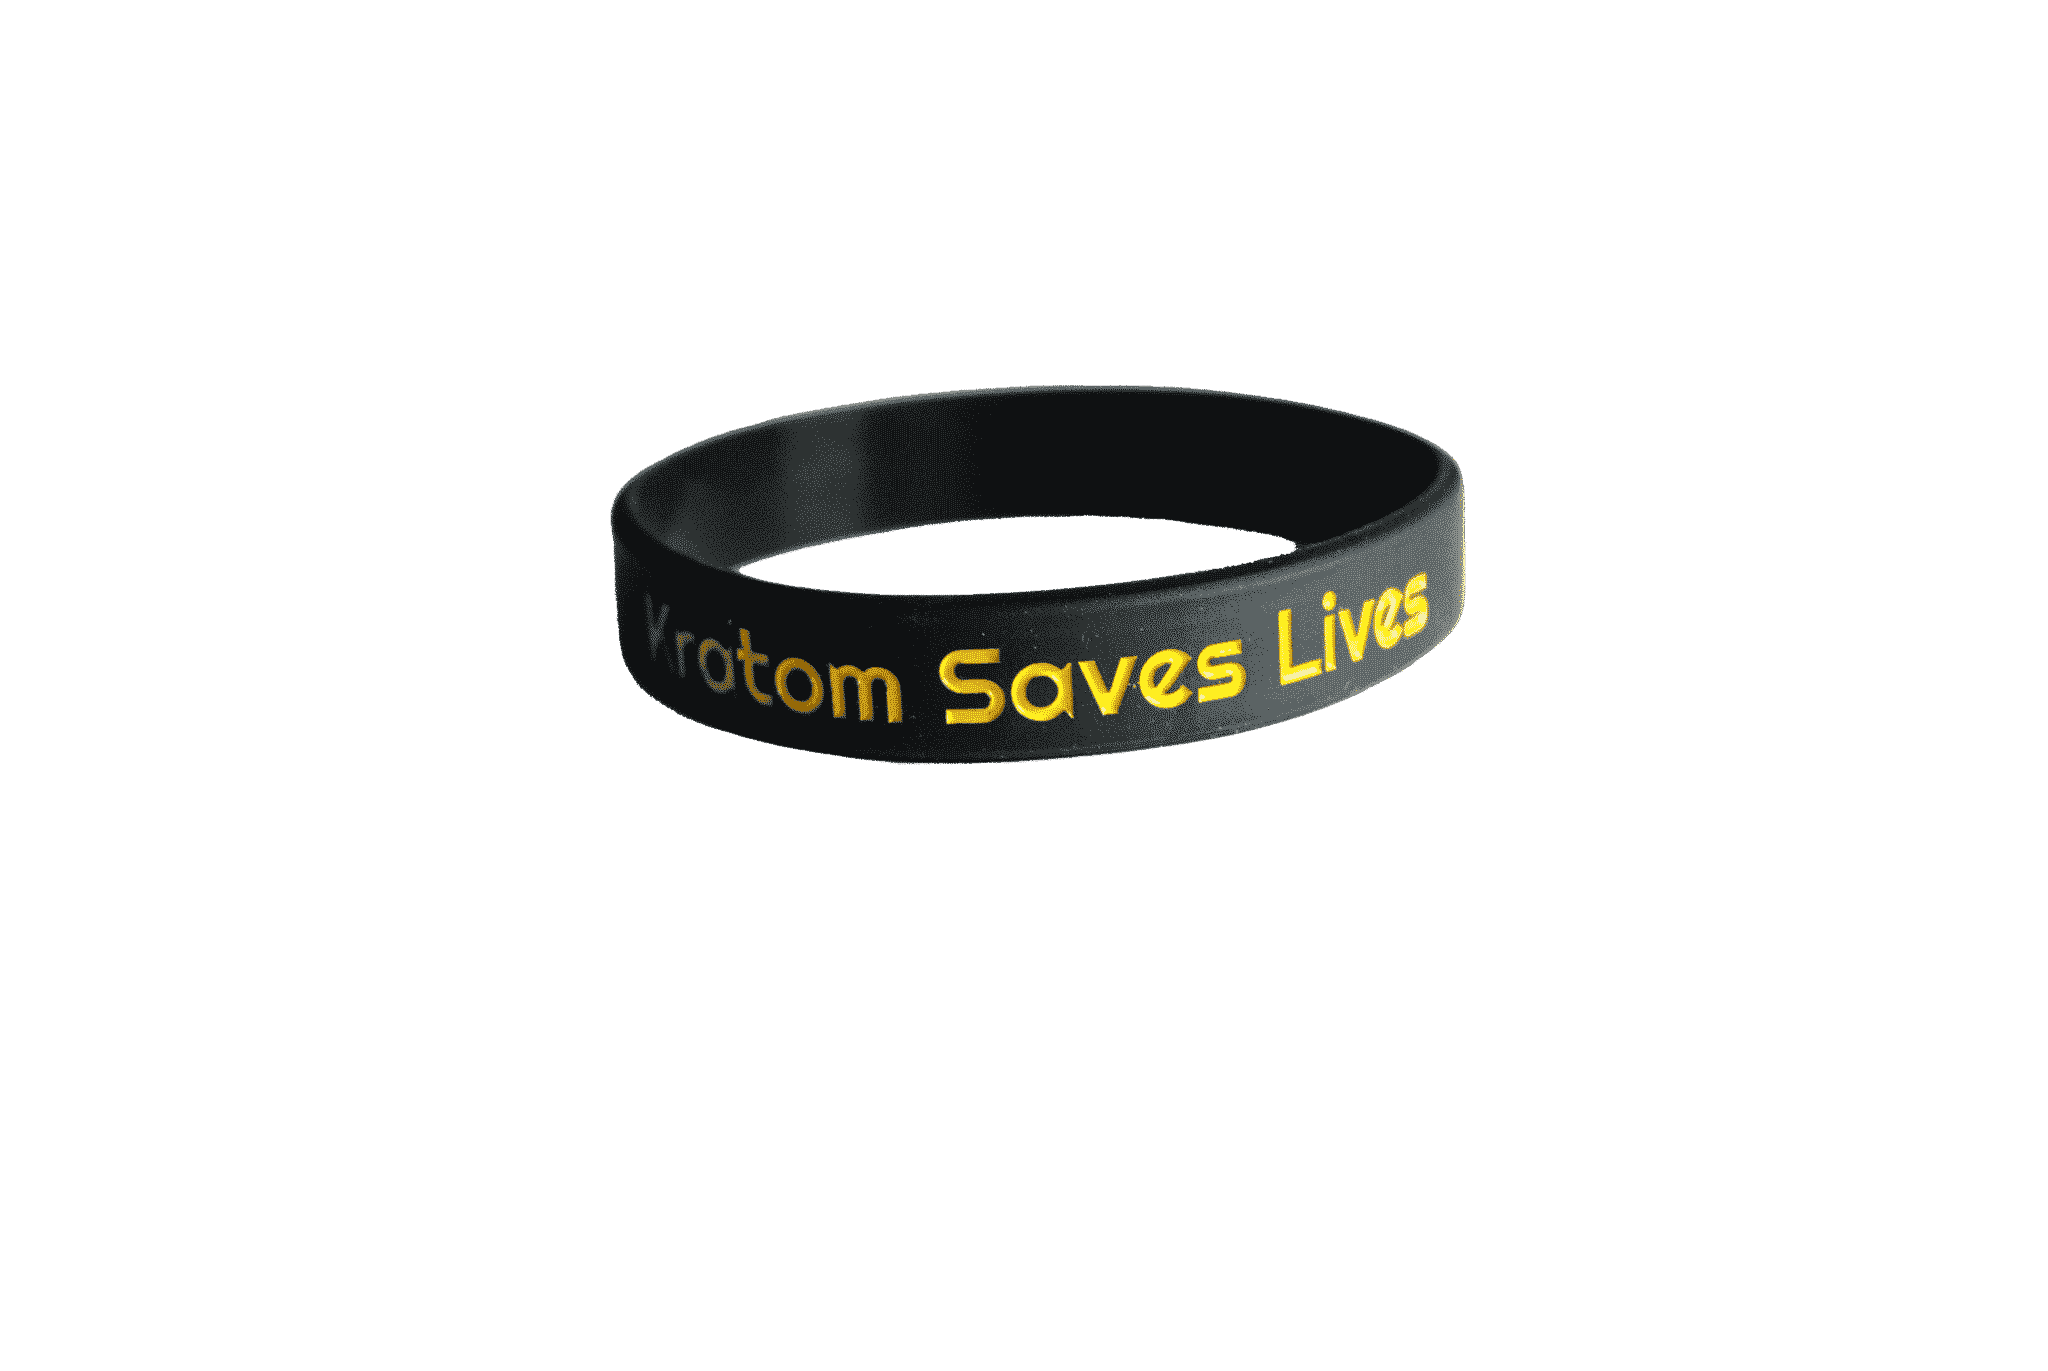 Kratom Saves Lives Bracelet